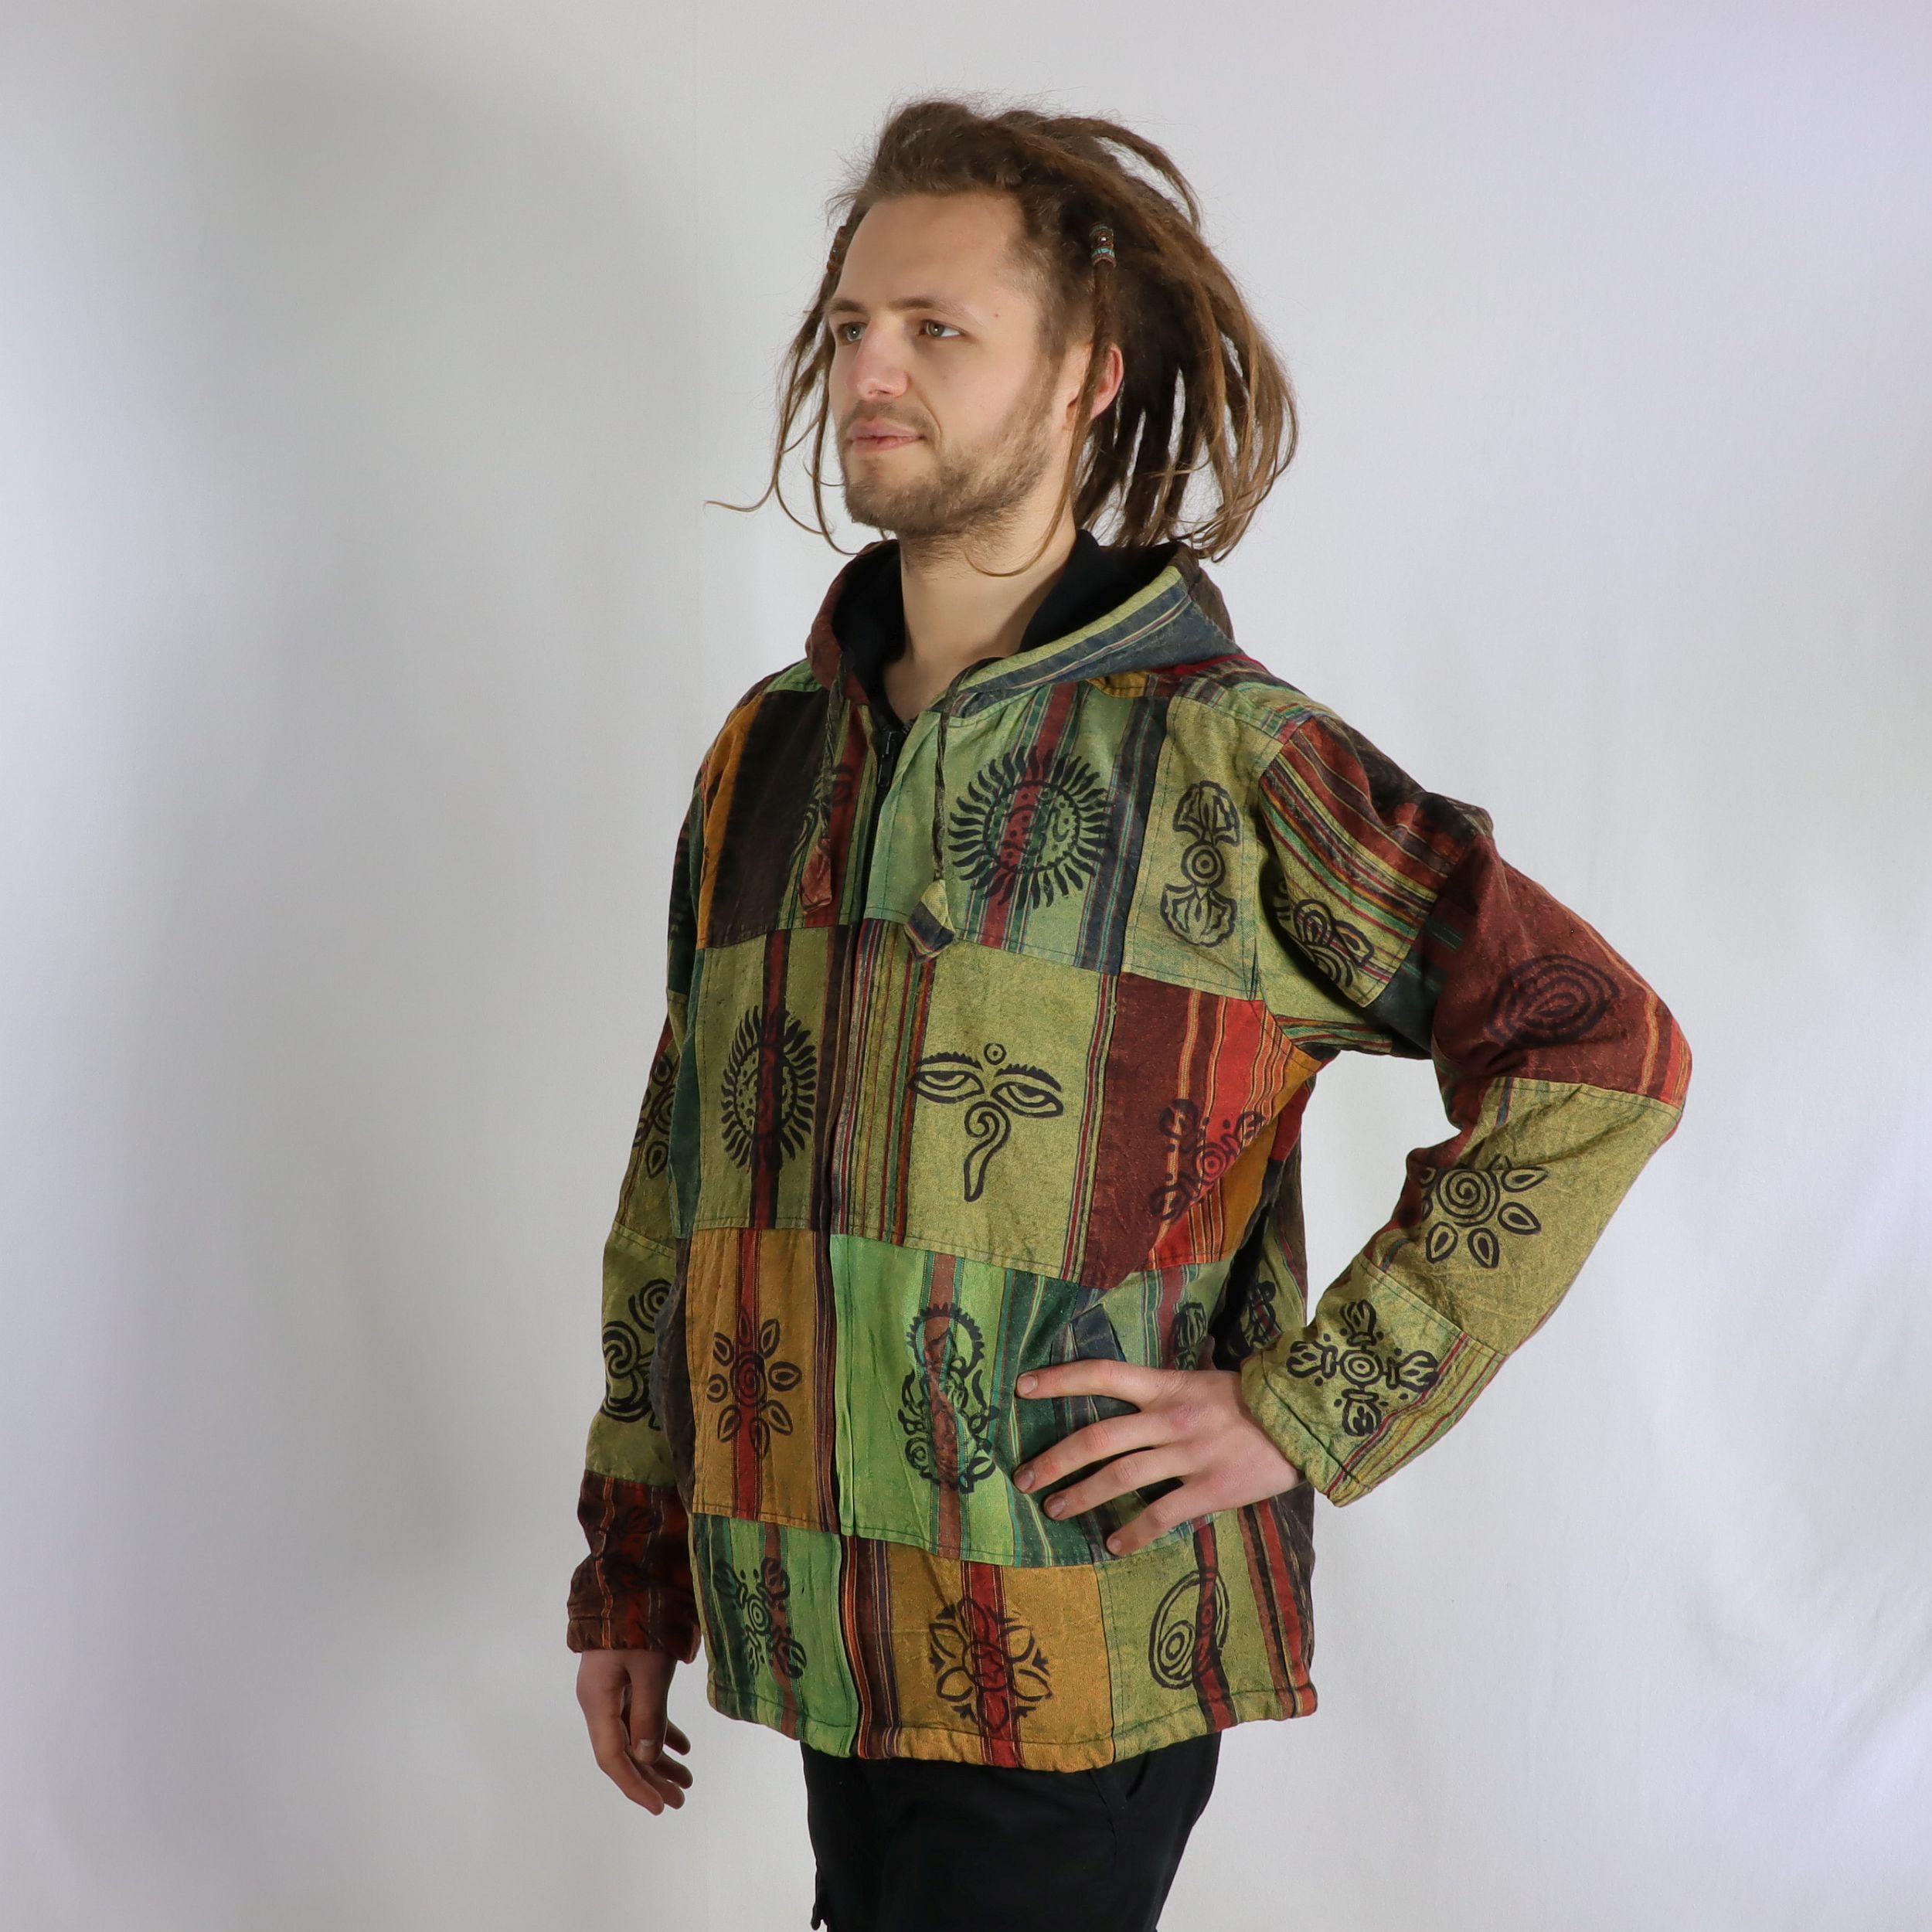 Jacke im Patchwork und Print Style - 100% Baumwolle - mit Kapuze - im Stonewash Used-Look Design - mit warmen Innenfutter - Deine angesagte Lieblingsjacke - Fair gehandelt aus Nepal